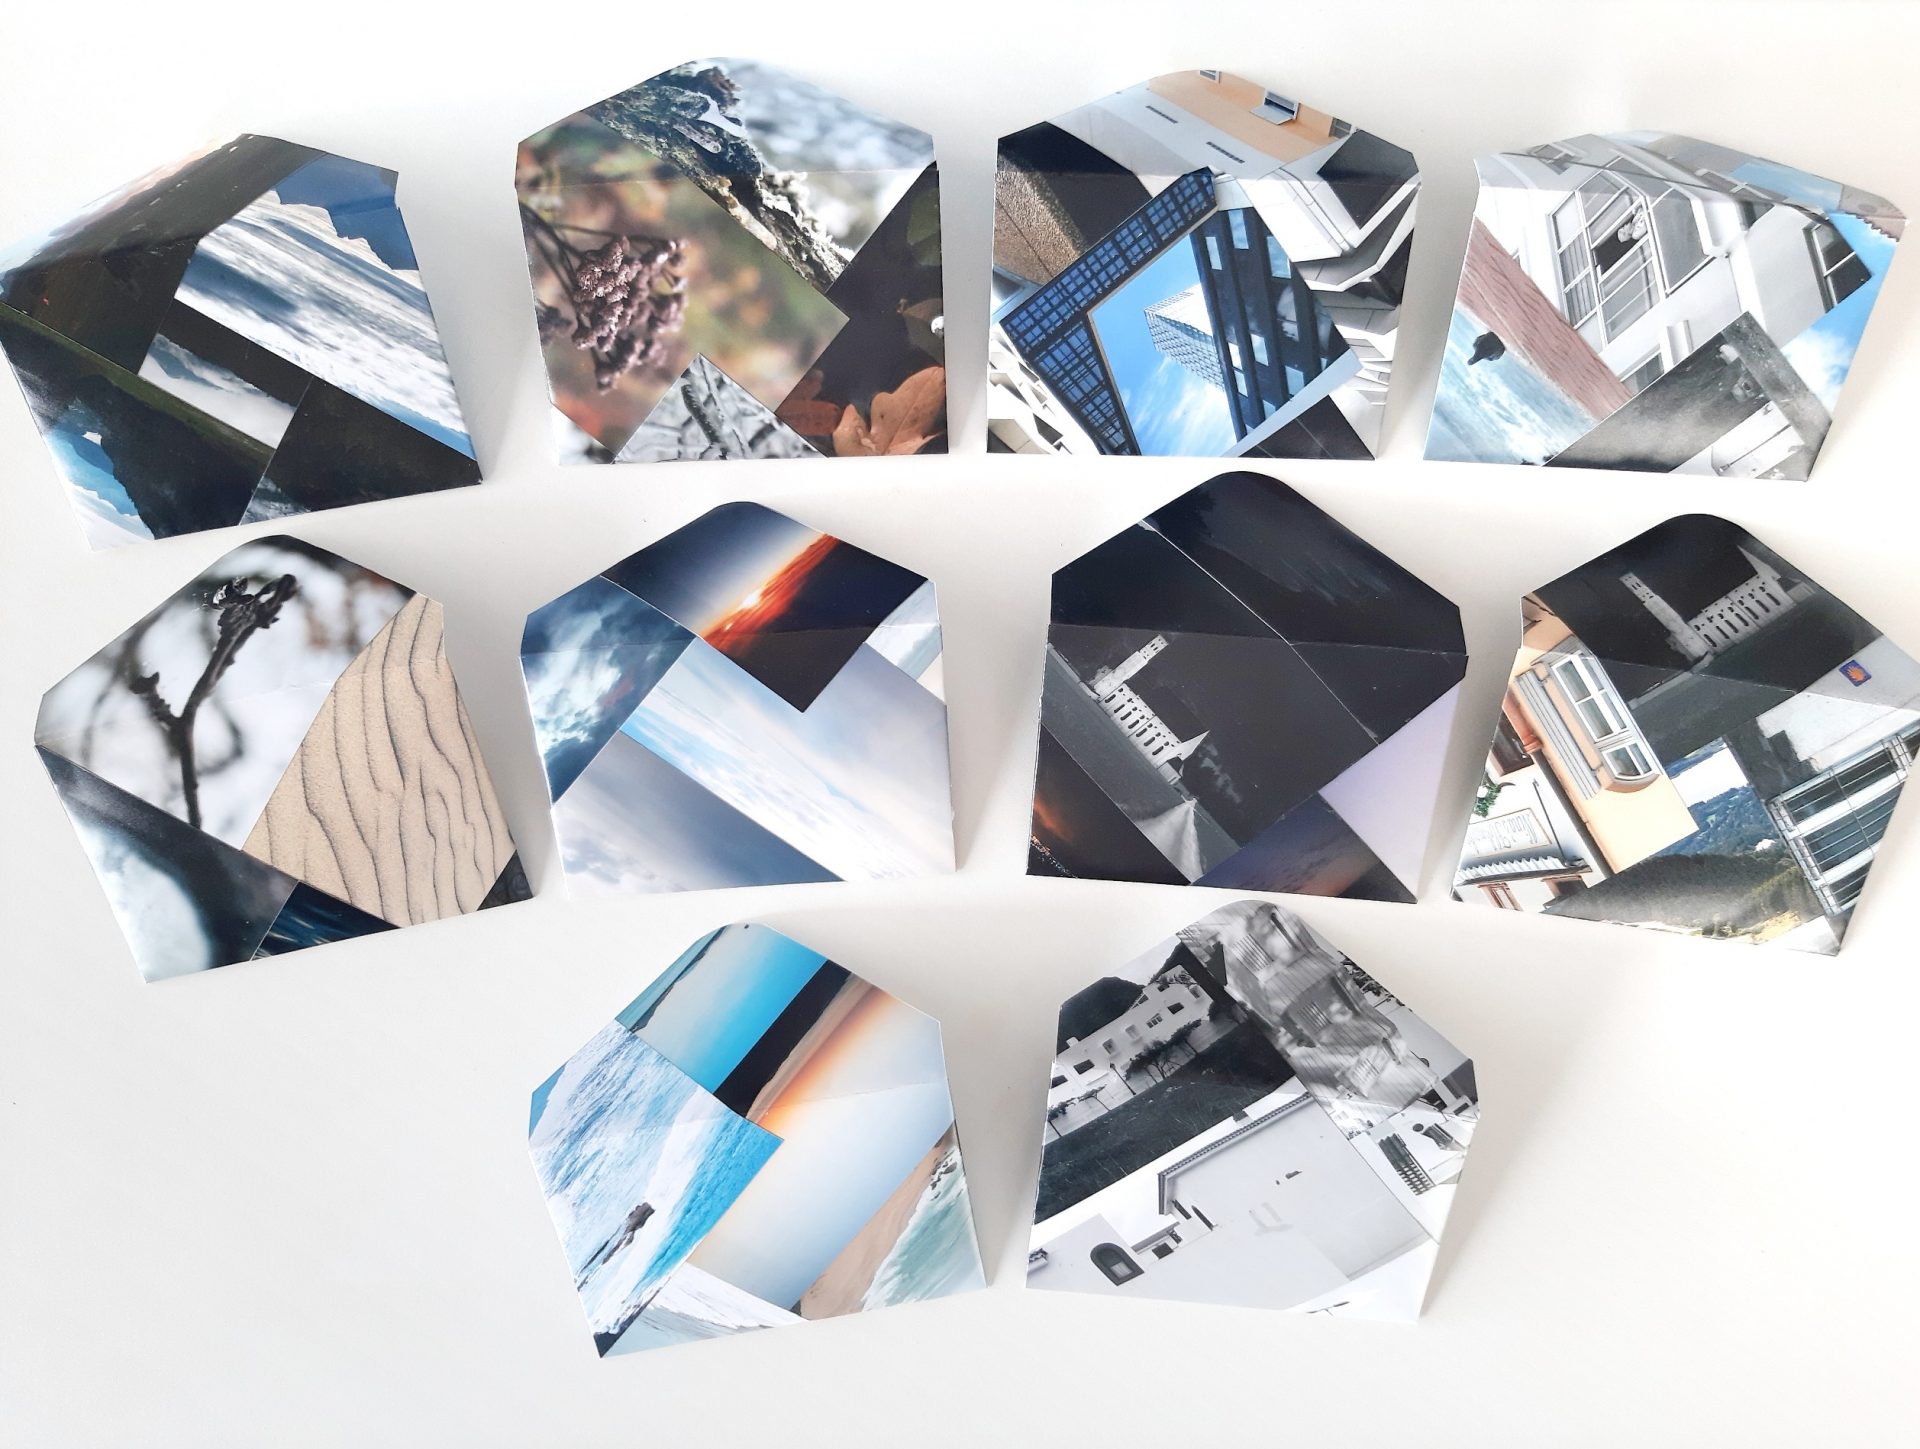 10 Umschläge aus recycelten, weggeworfenen Fotos – von hinten gesehen